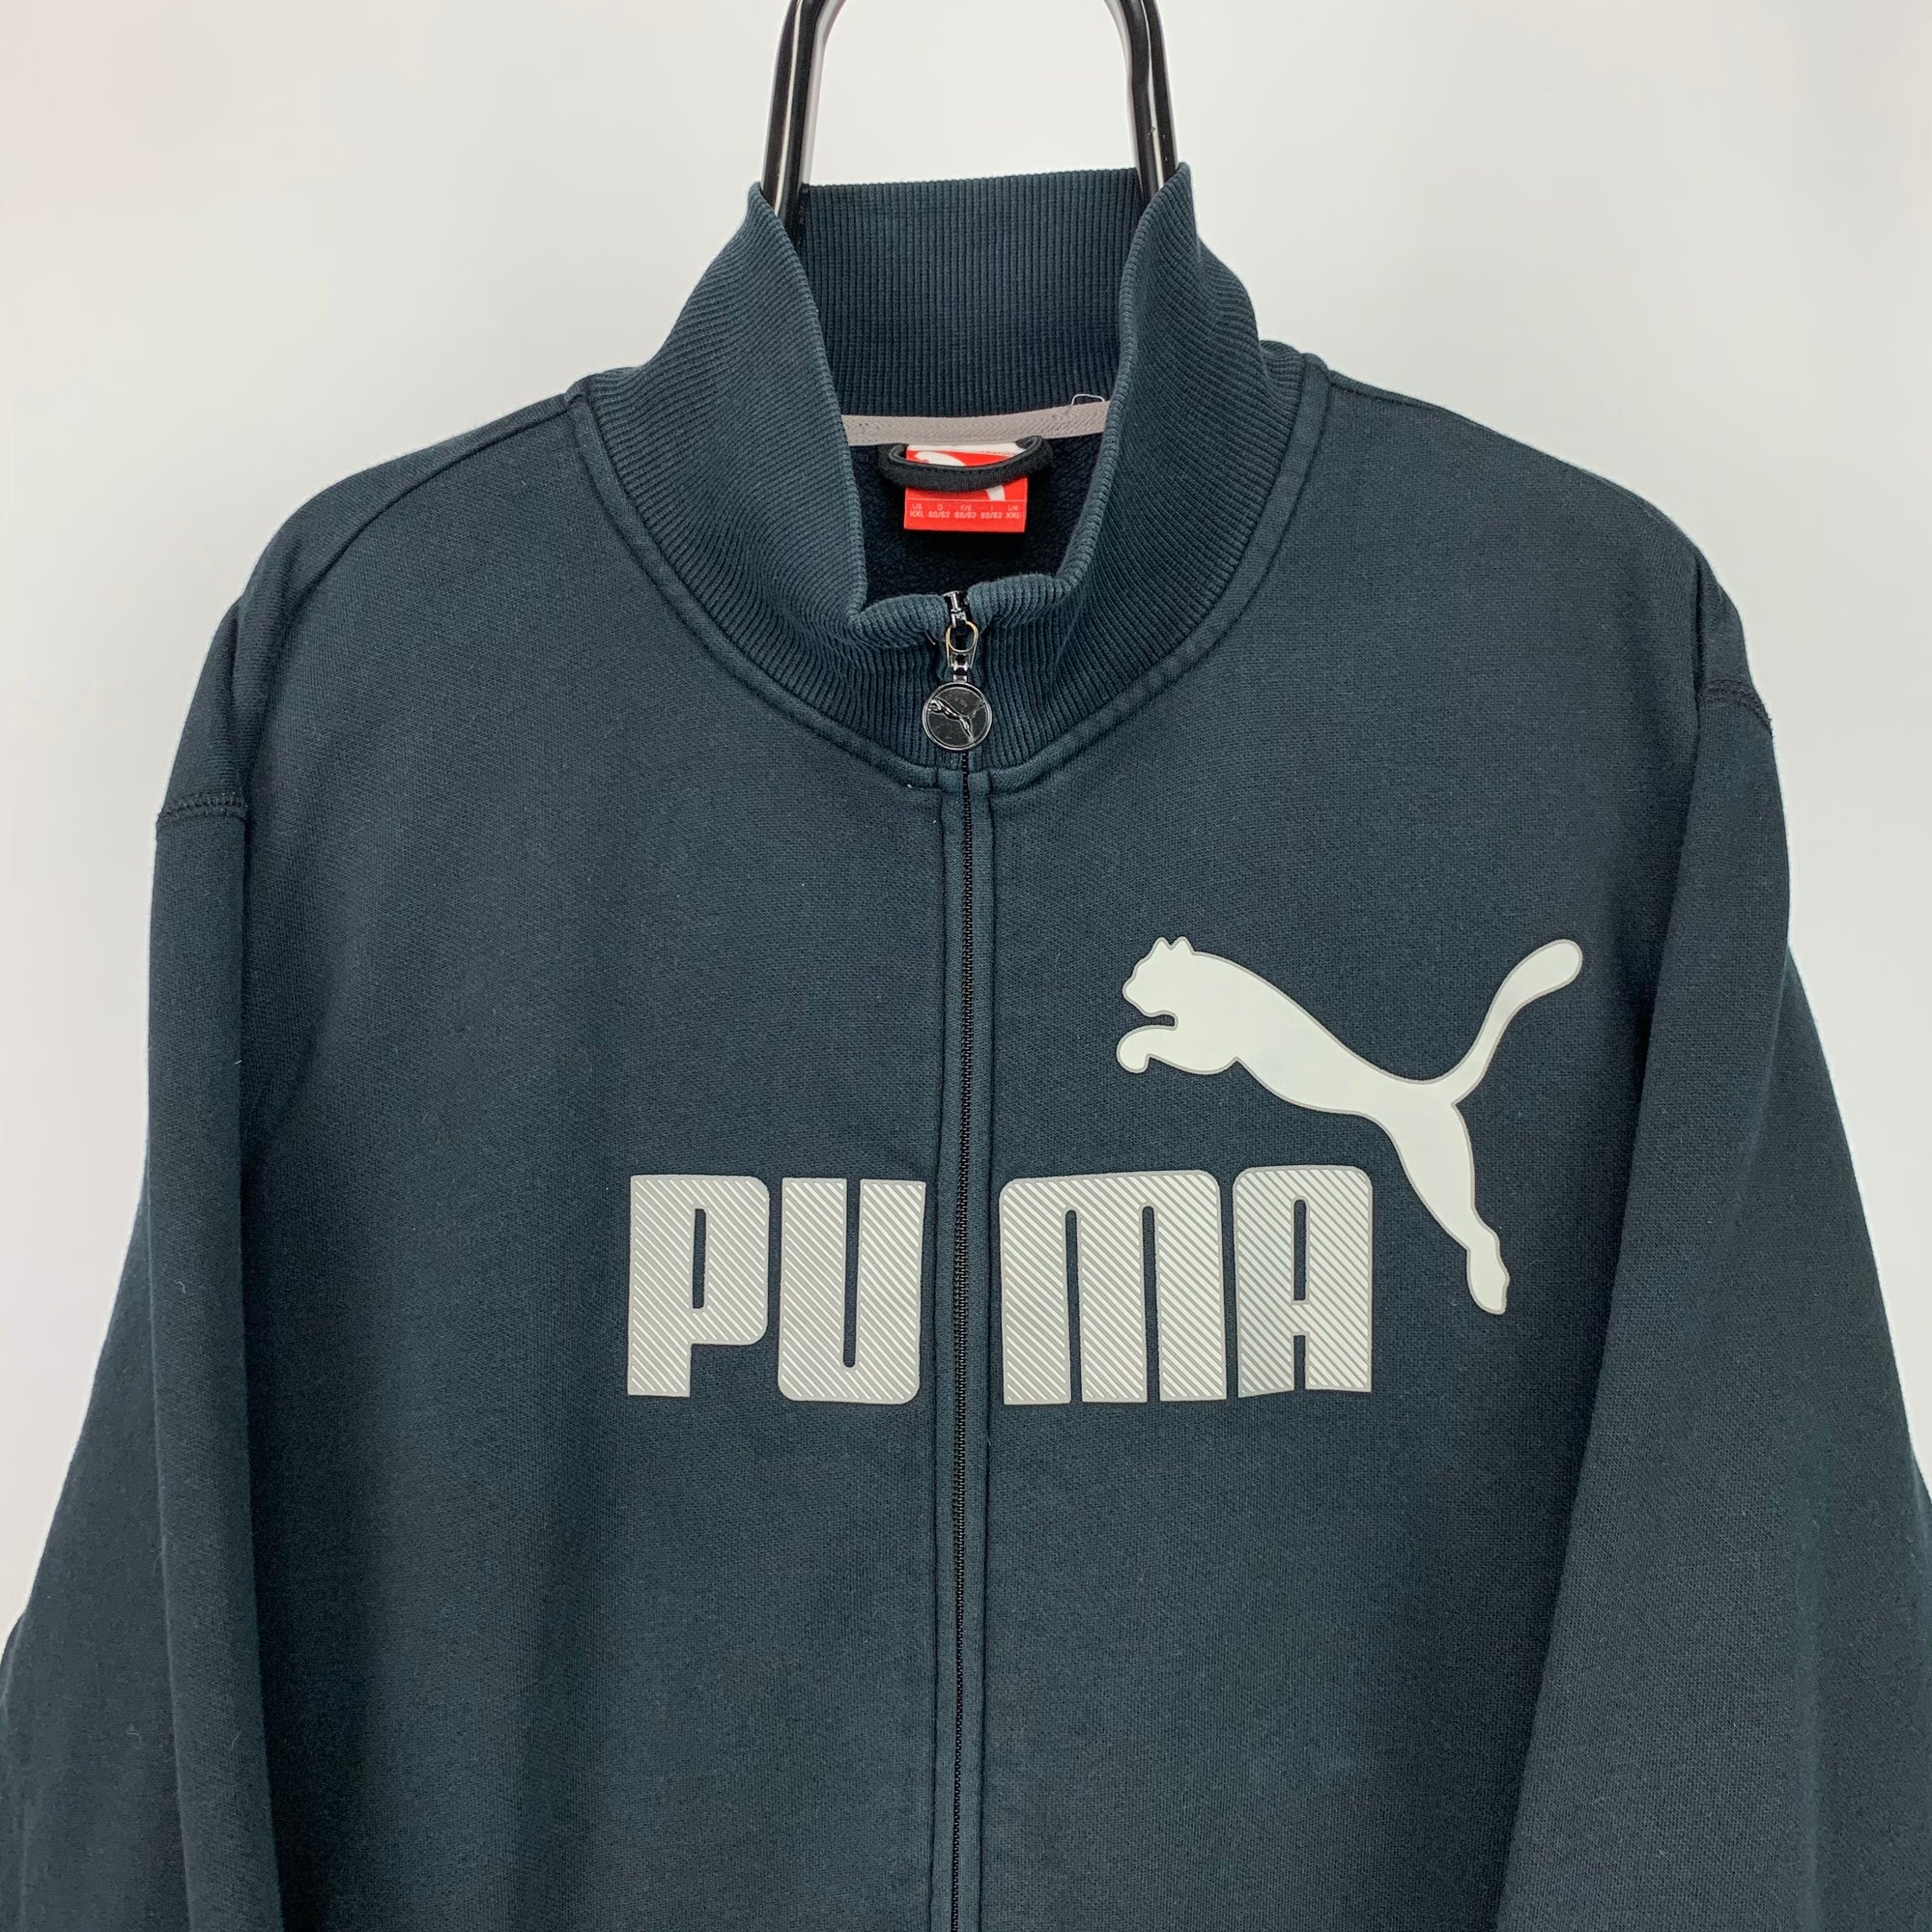 Puma Spellout Zip Sweatshirt in Black - Men's XXL/Women's XXXL